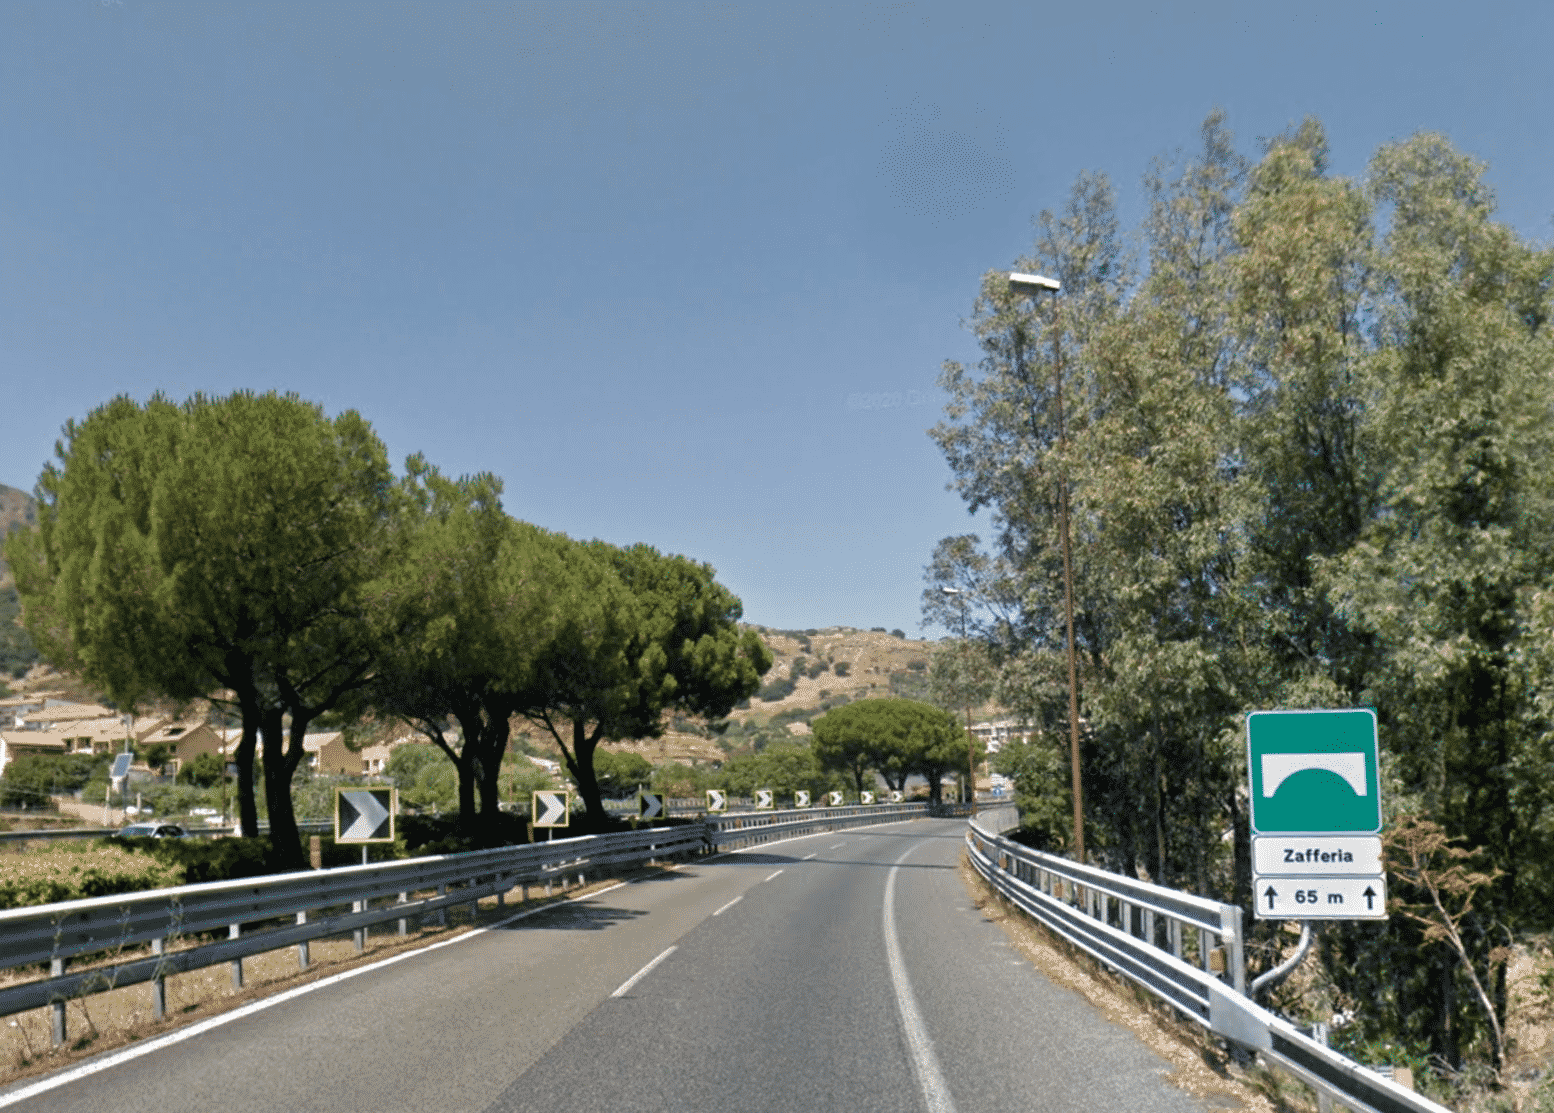 Tangenziale di Messina: riaperto il viadotto Zafferia